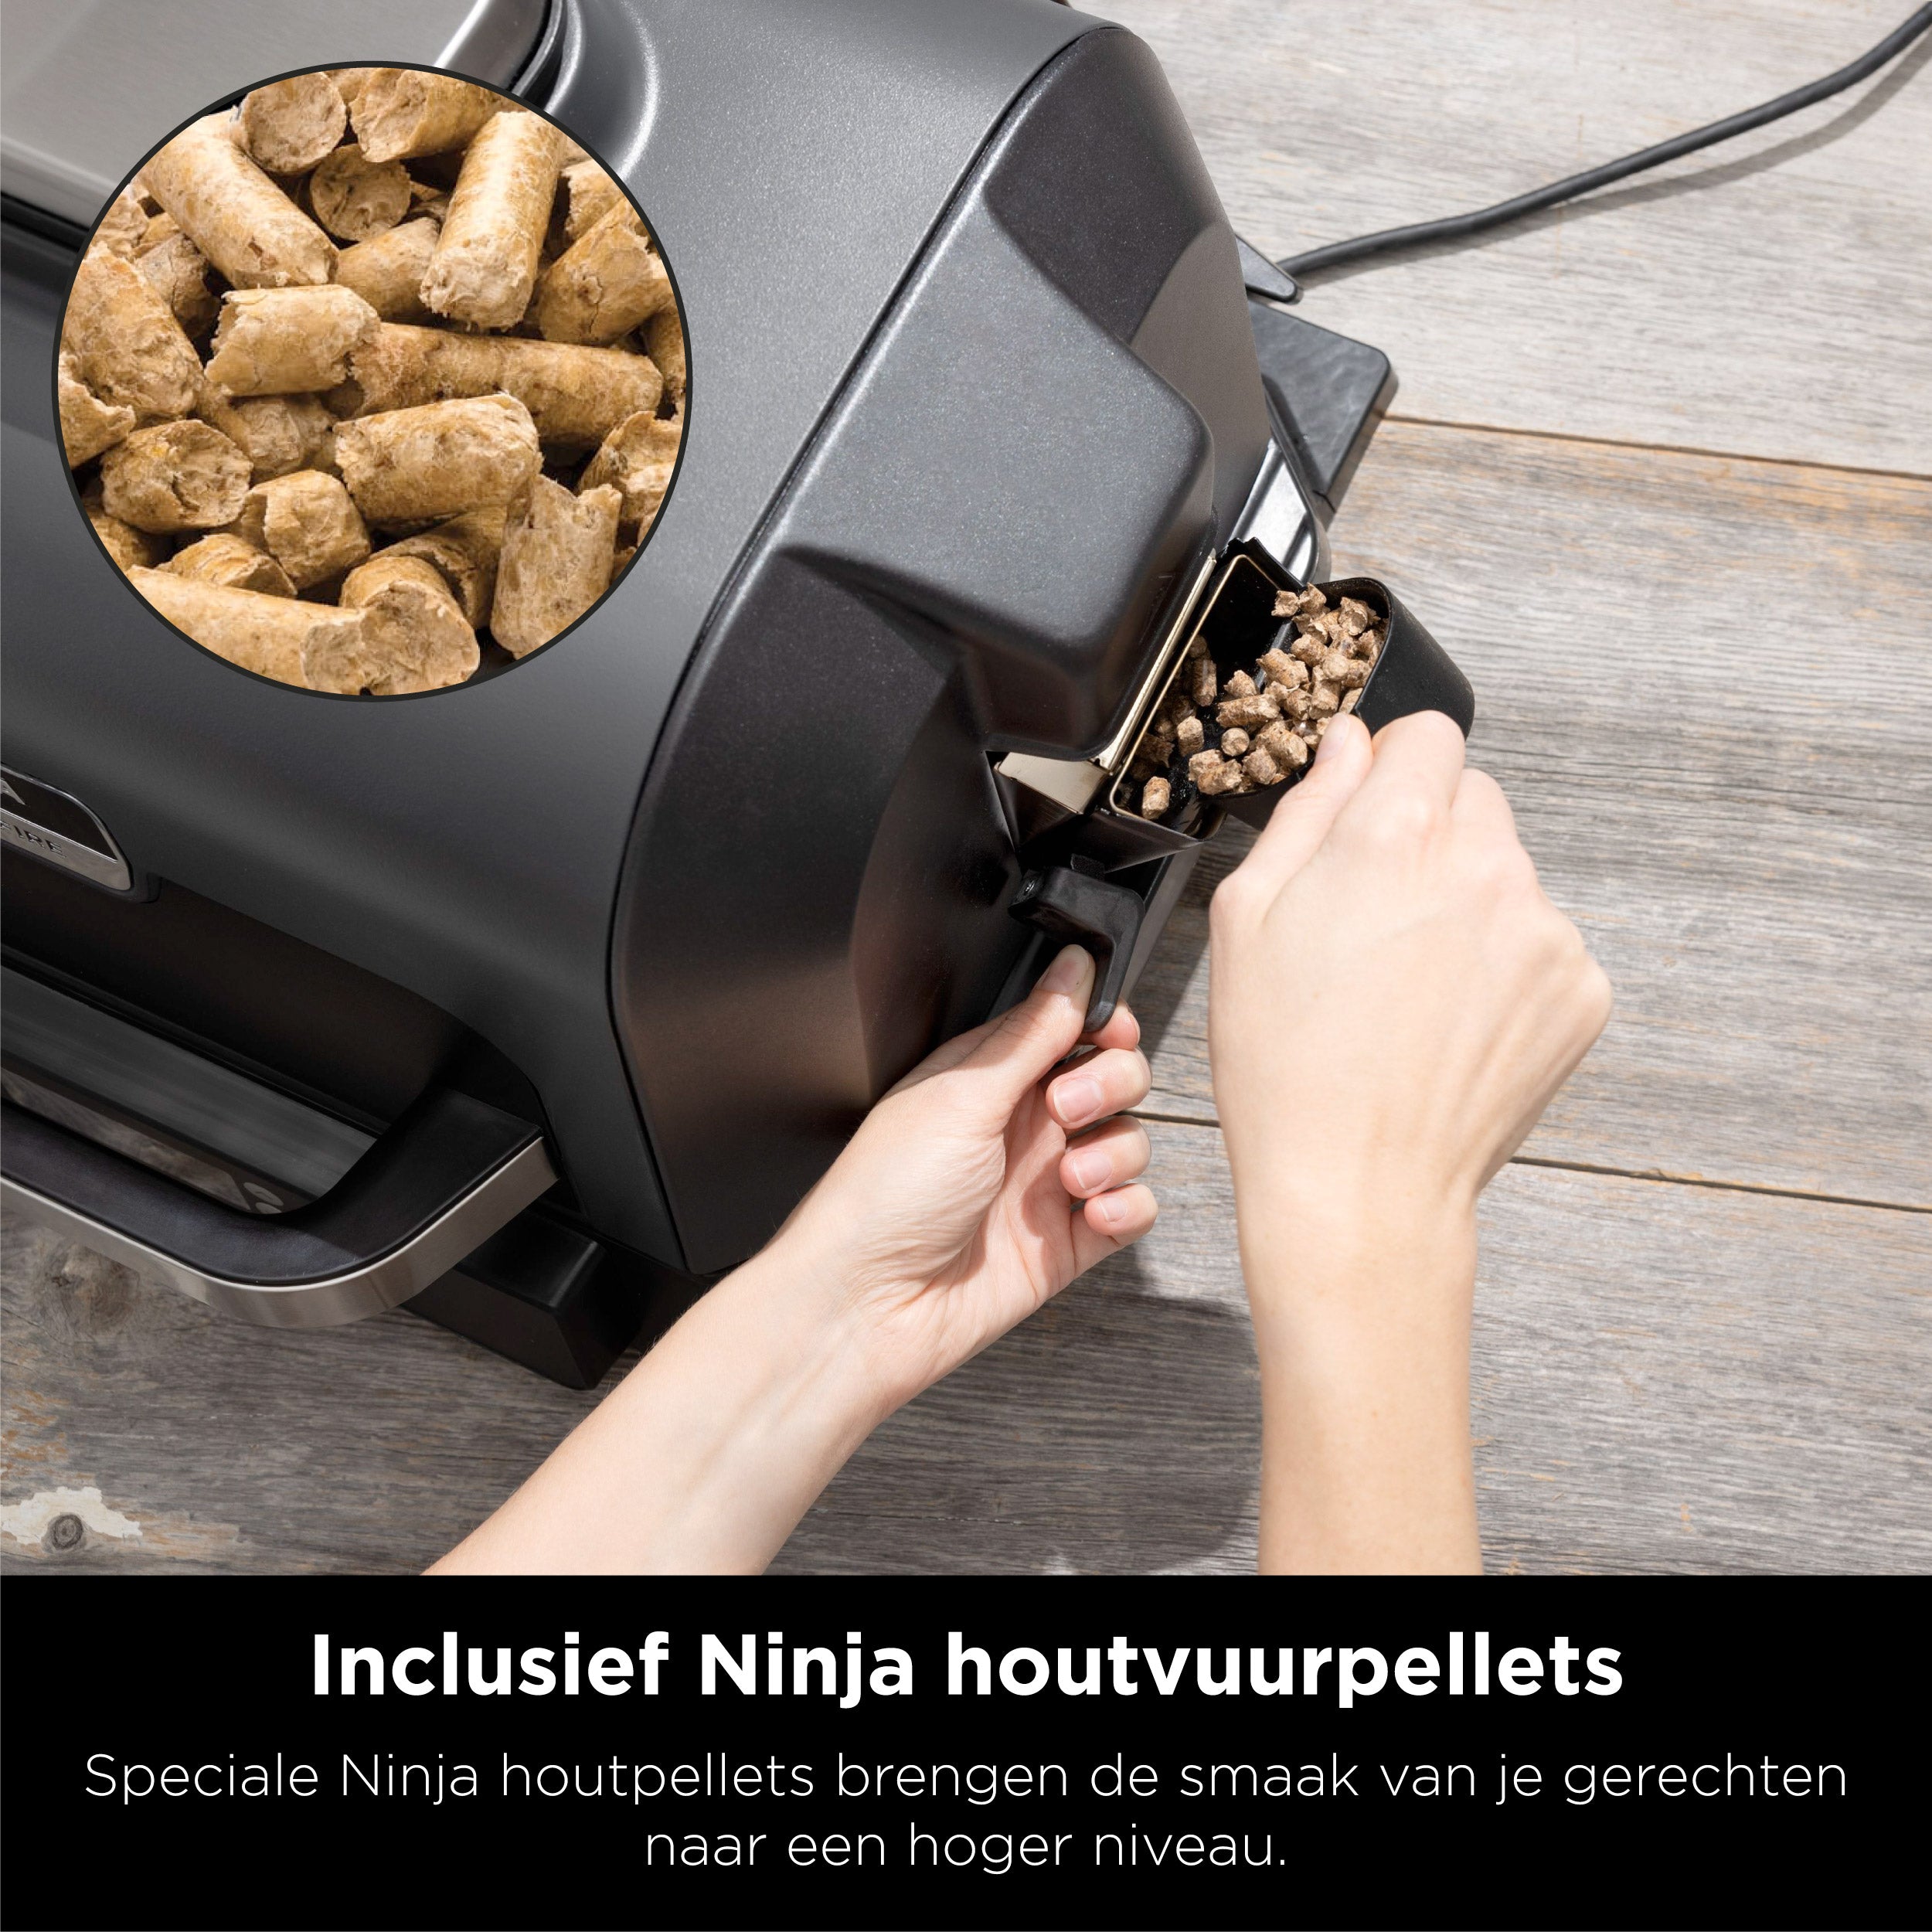 Ninja Woodfire Pro XL - Elektrische BBQ Grill en Smoker - 7 Kookfuncties - OG901EU